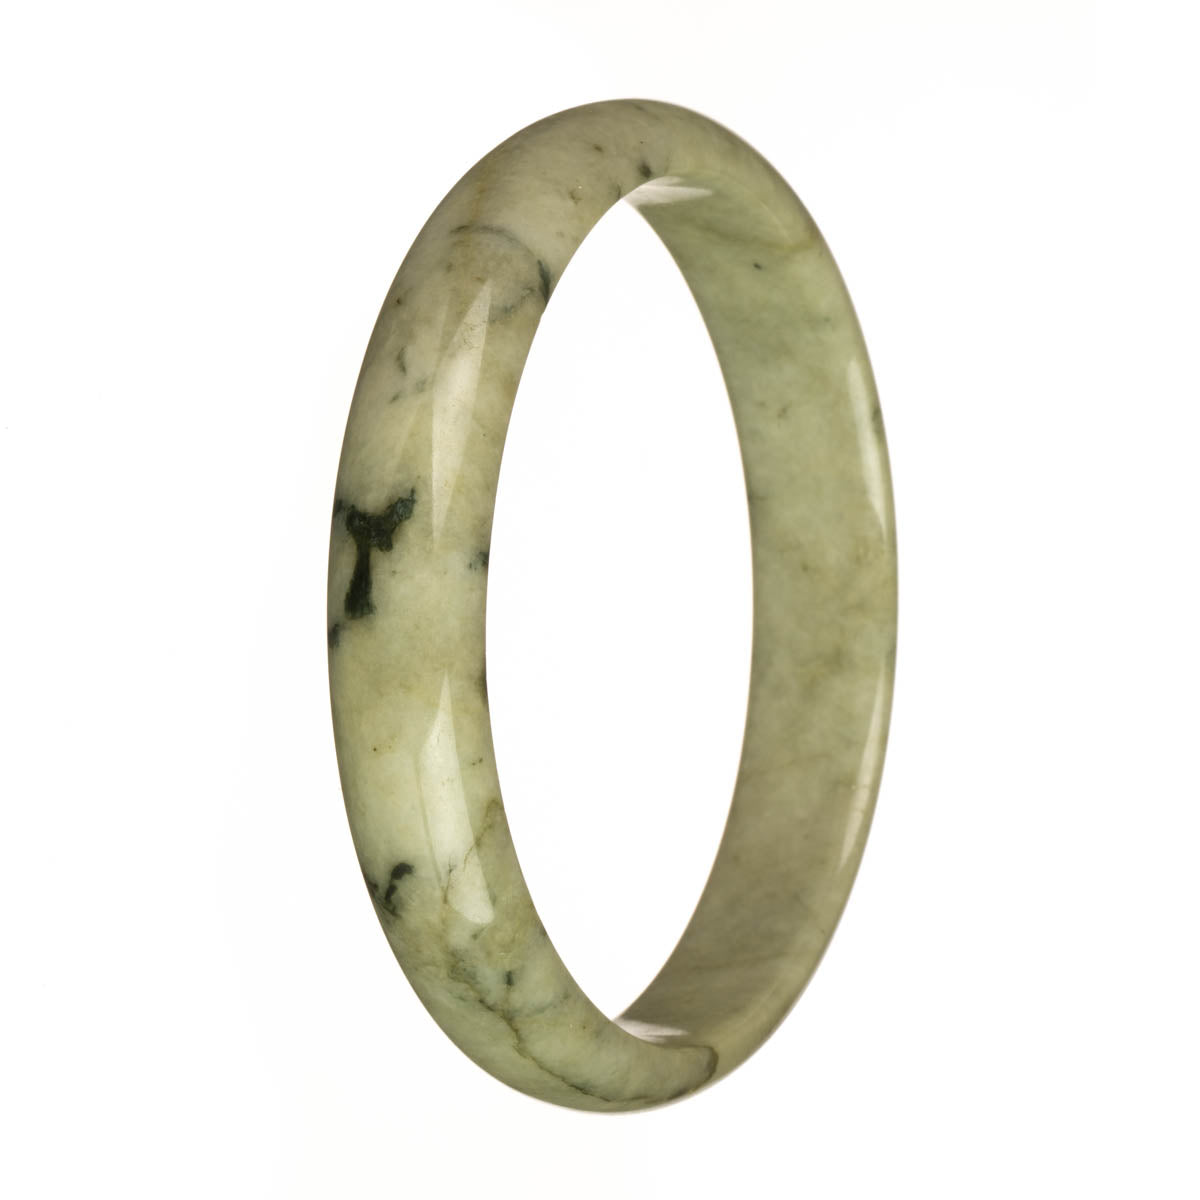 78.5mm Olive Green with Dark Green Patterns Jade Bangle Bracelet